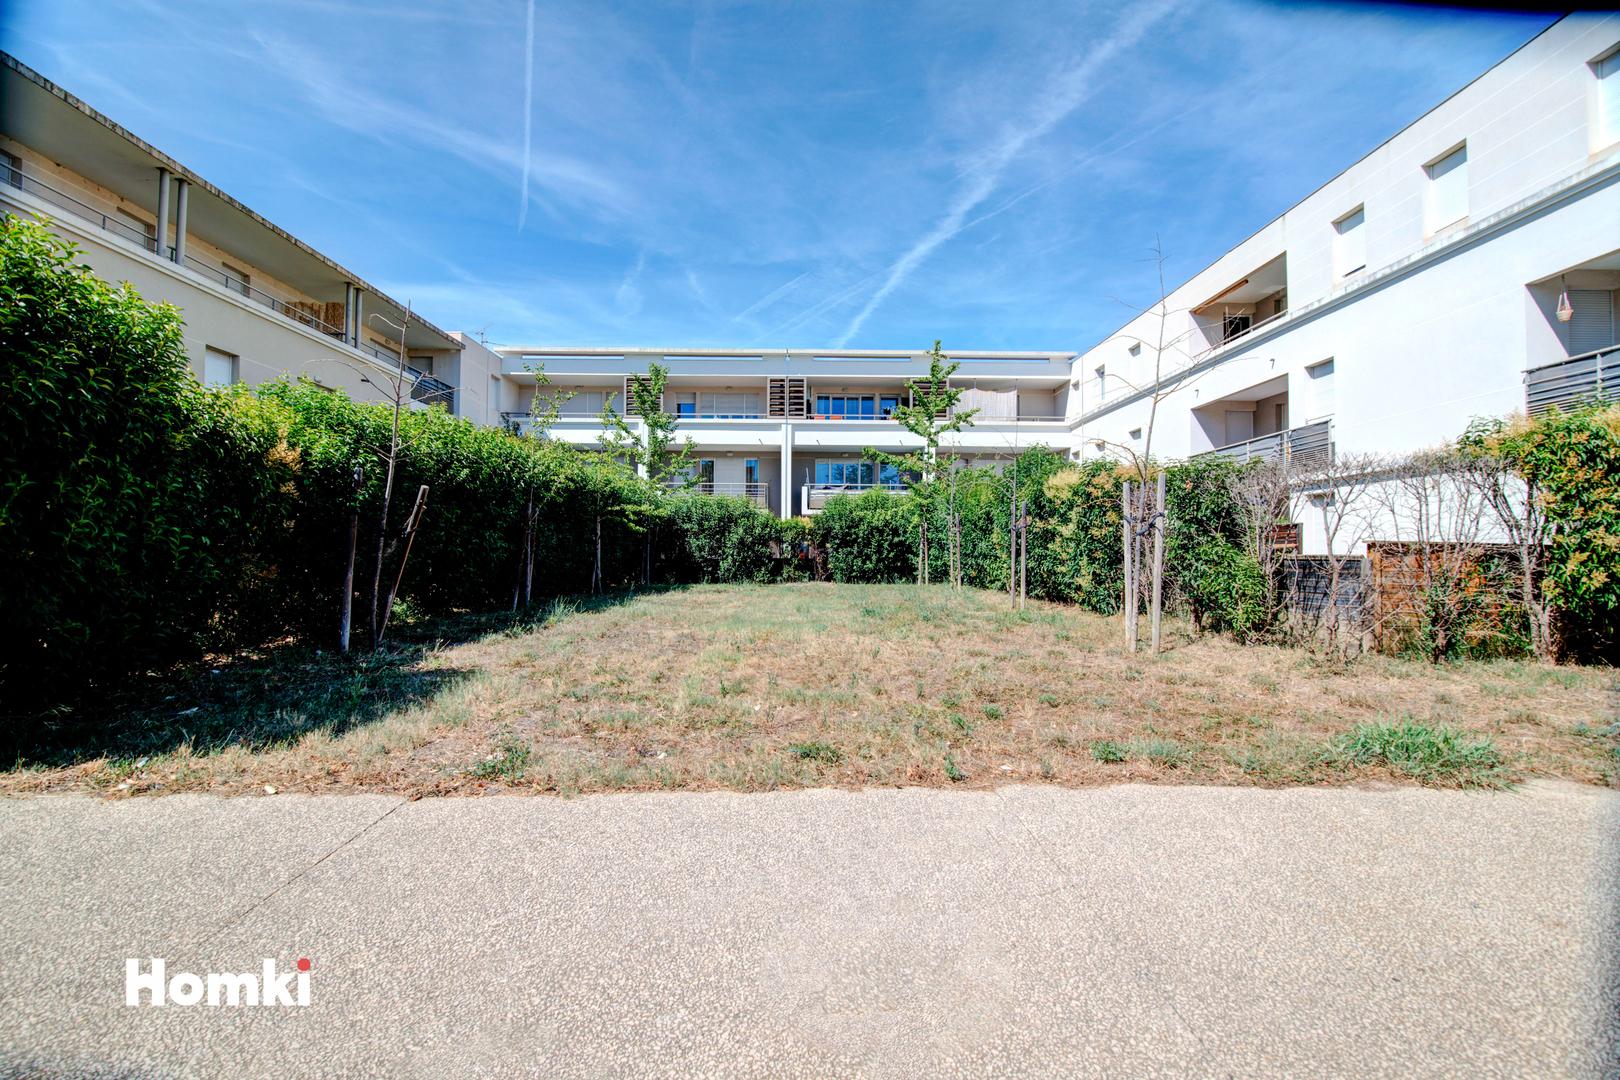 Homki - Vente Appartement  de 65.5 m² à Avignon 84000